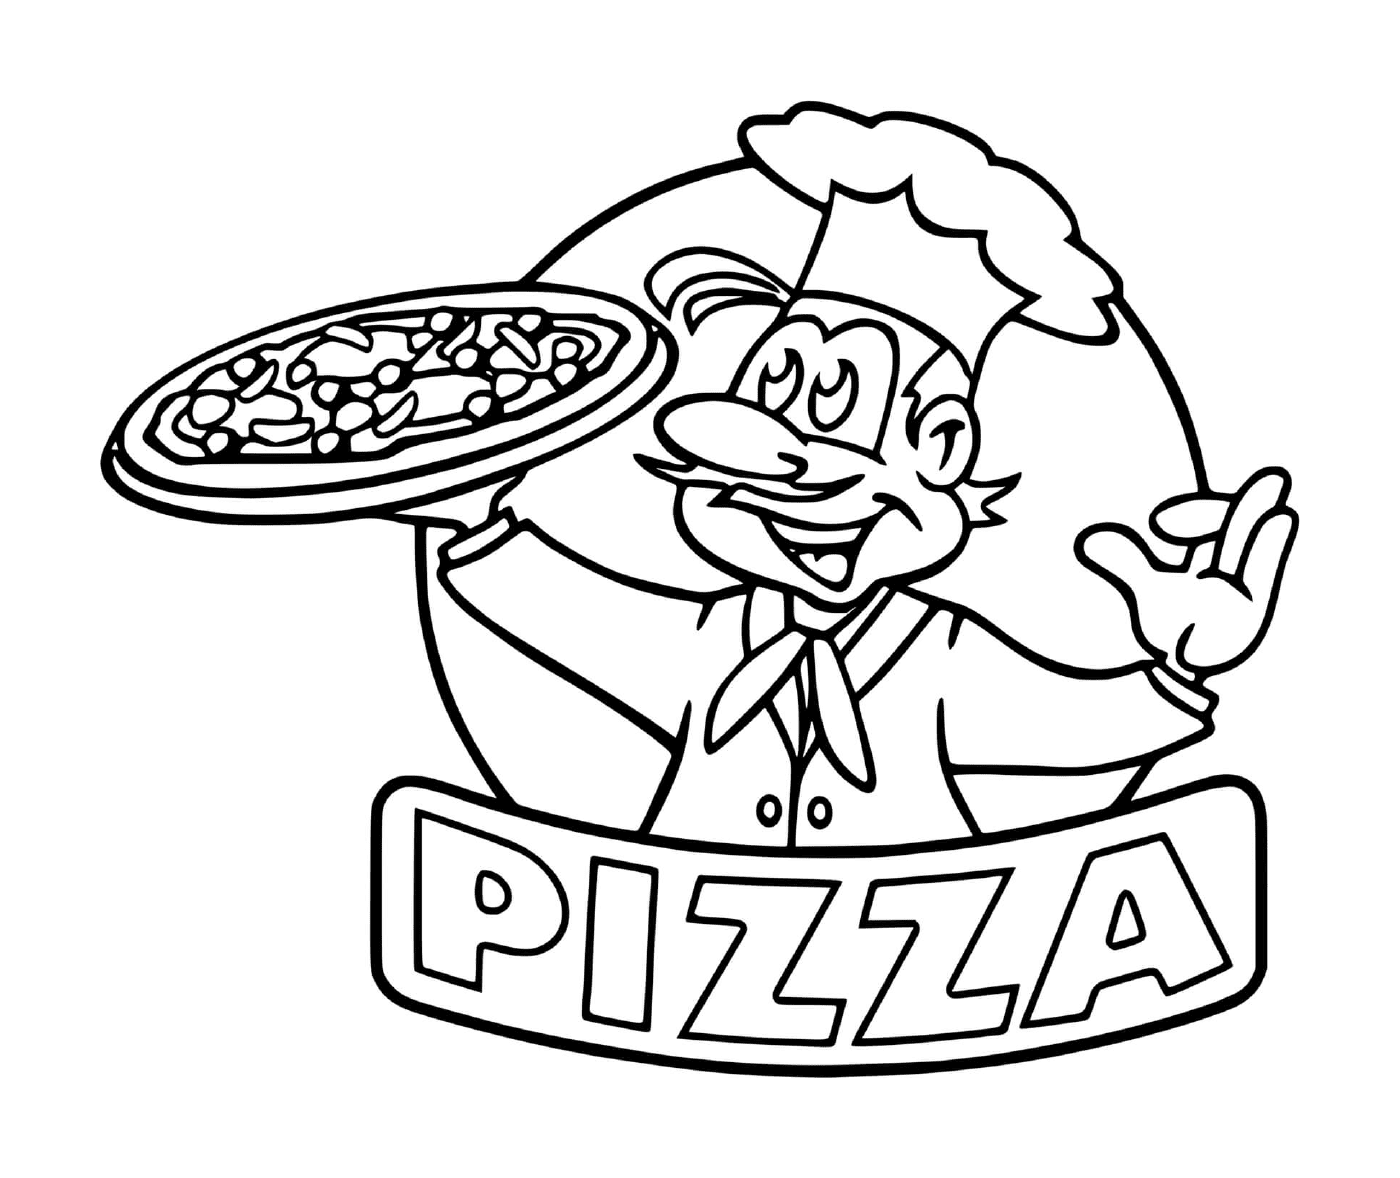  The pizza restaurant chef's logo 